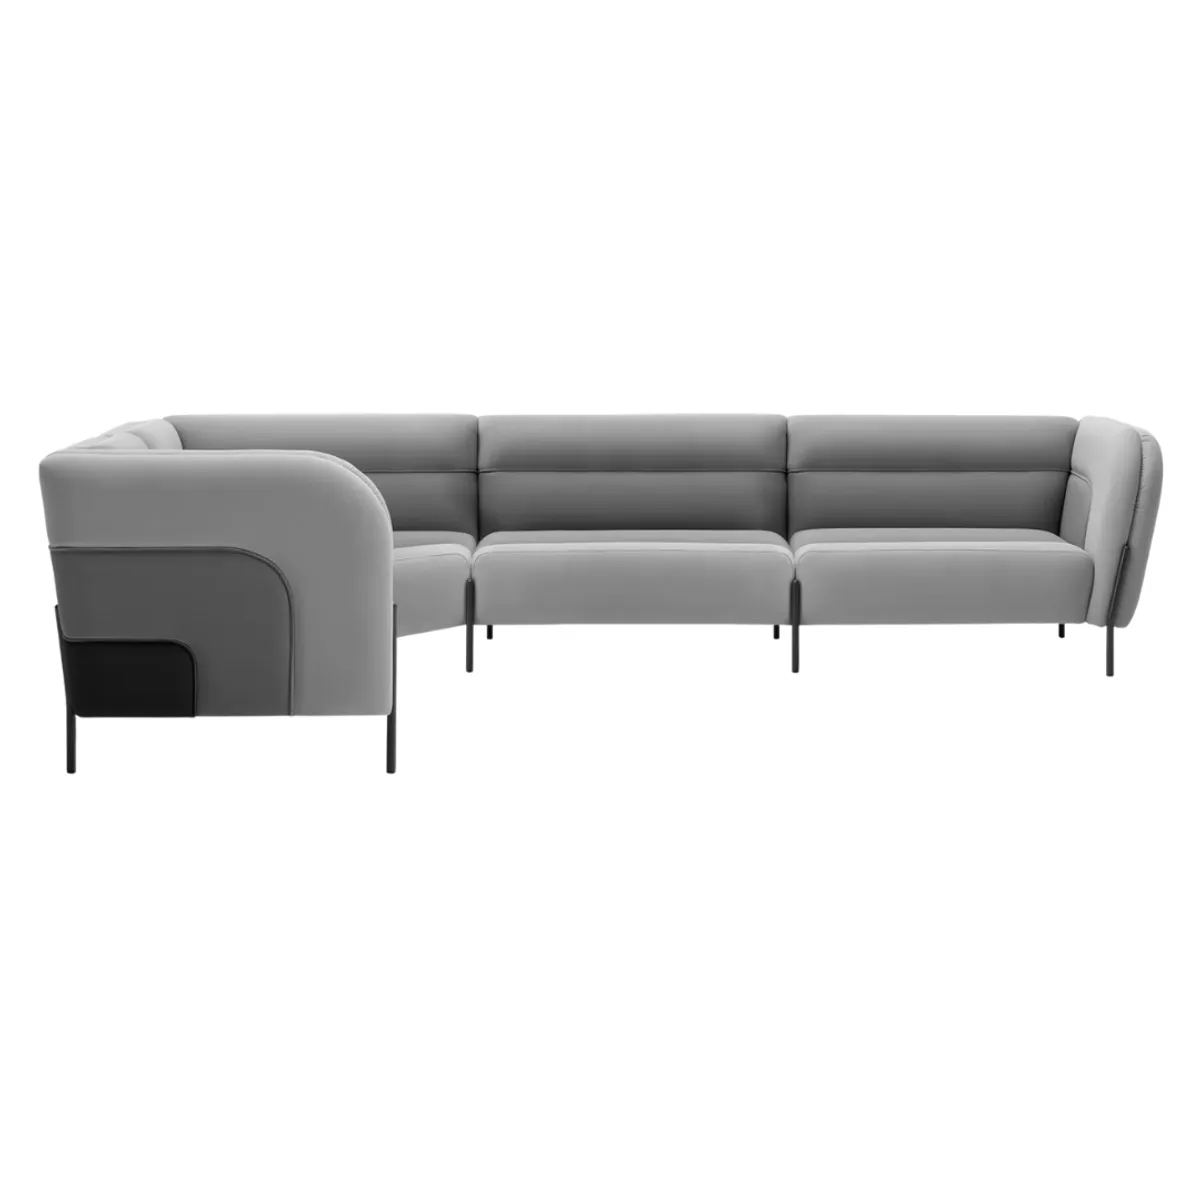 Drake modular sofa 6